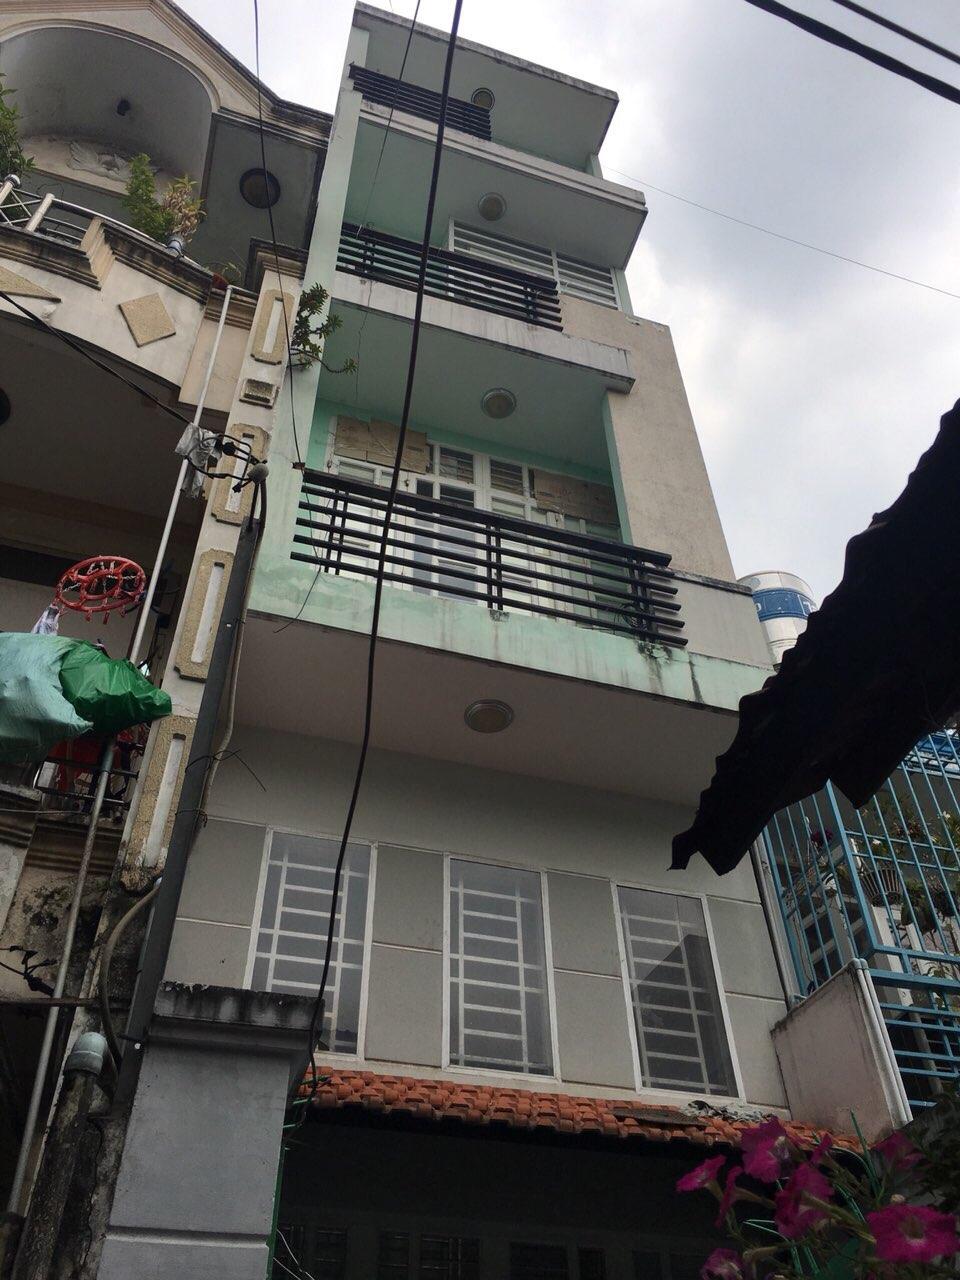 Tin hot chính chủ bán nhà HXH đường Phan Văn Trị gần Emart Gò Vấp DT 5 x 20 m, giá 8 tỷ TL Liên hệ : 0988 50 48 48 Anh Cầm. 